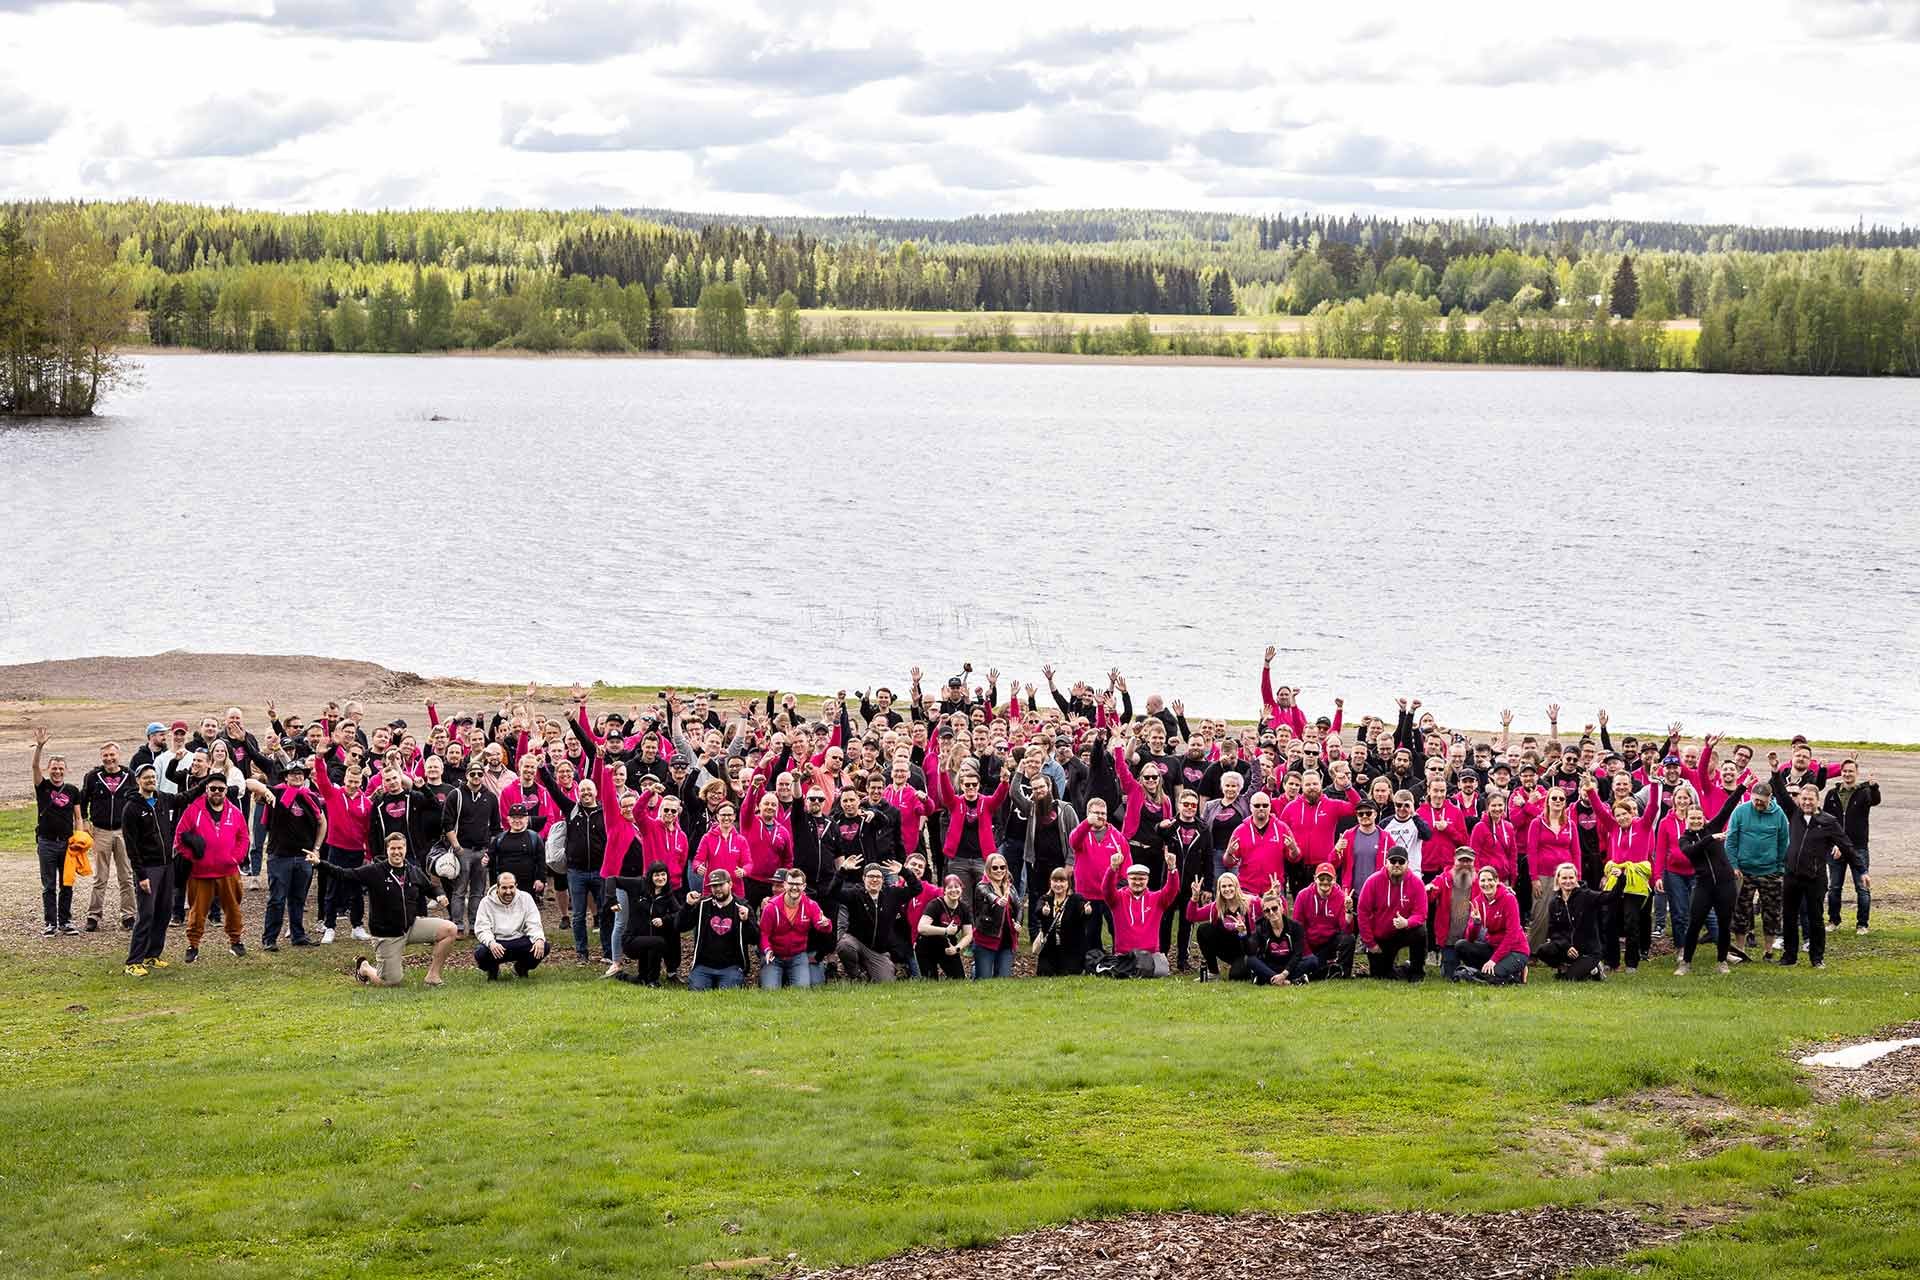 Joukko pinkkeihin ja mustiin huppareihin pukeutuneita pinjalaisia järven rannalla heiluttamassa kameraan